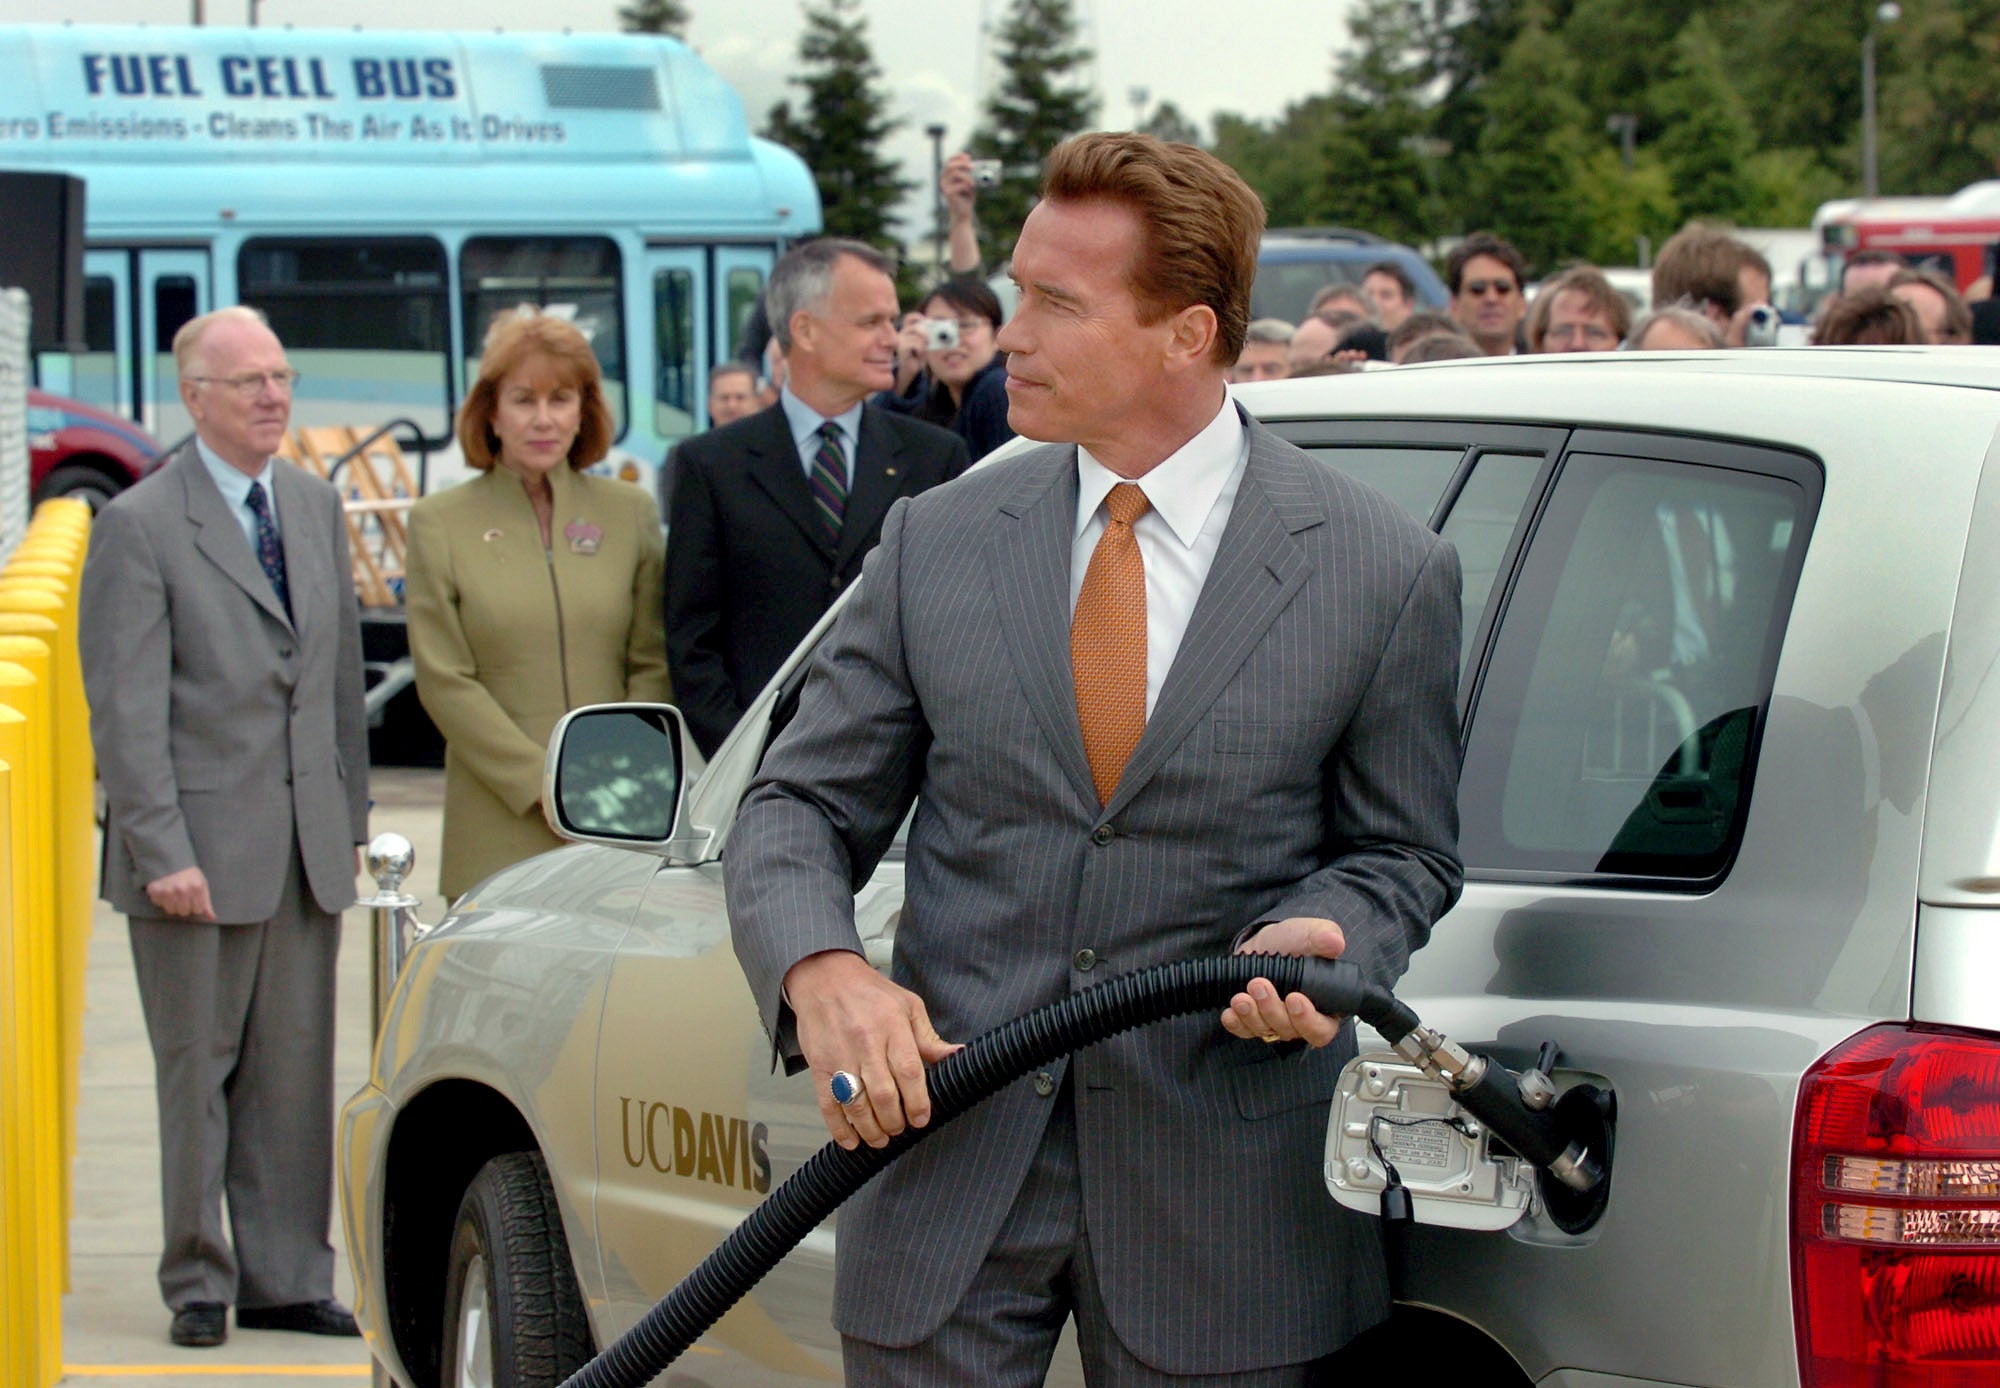 Schwarzenegger, wearing a suit, fills up a car.